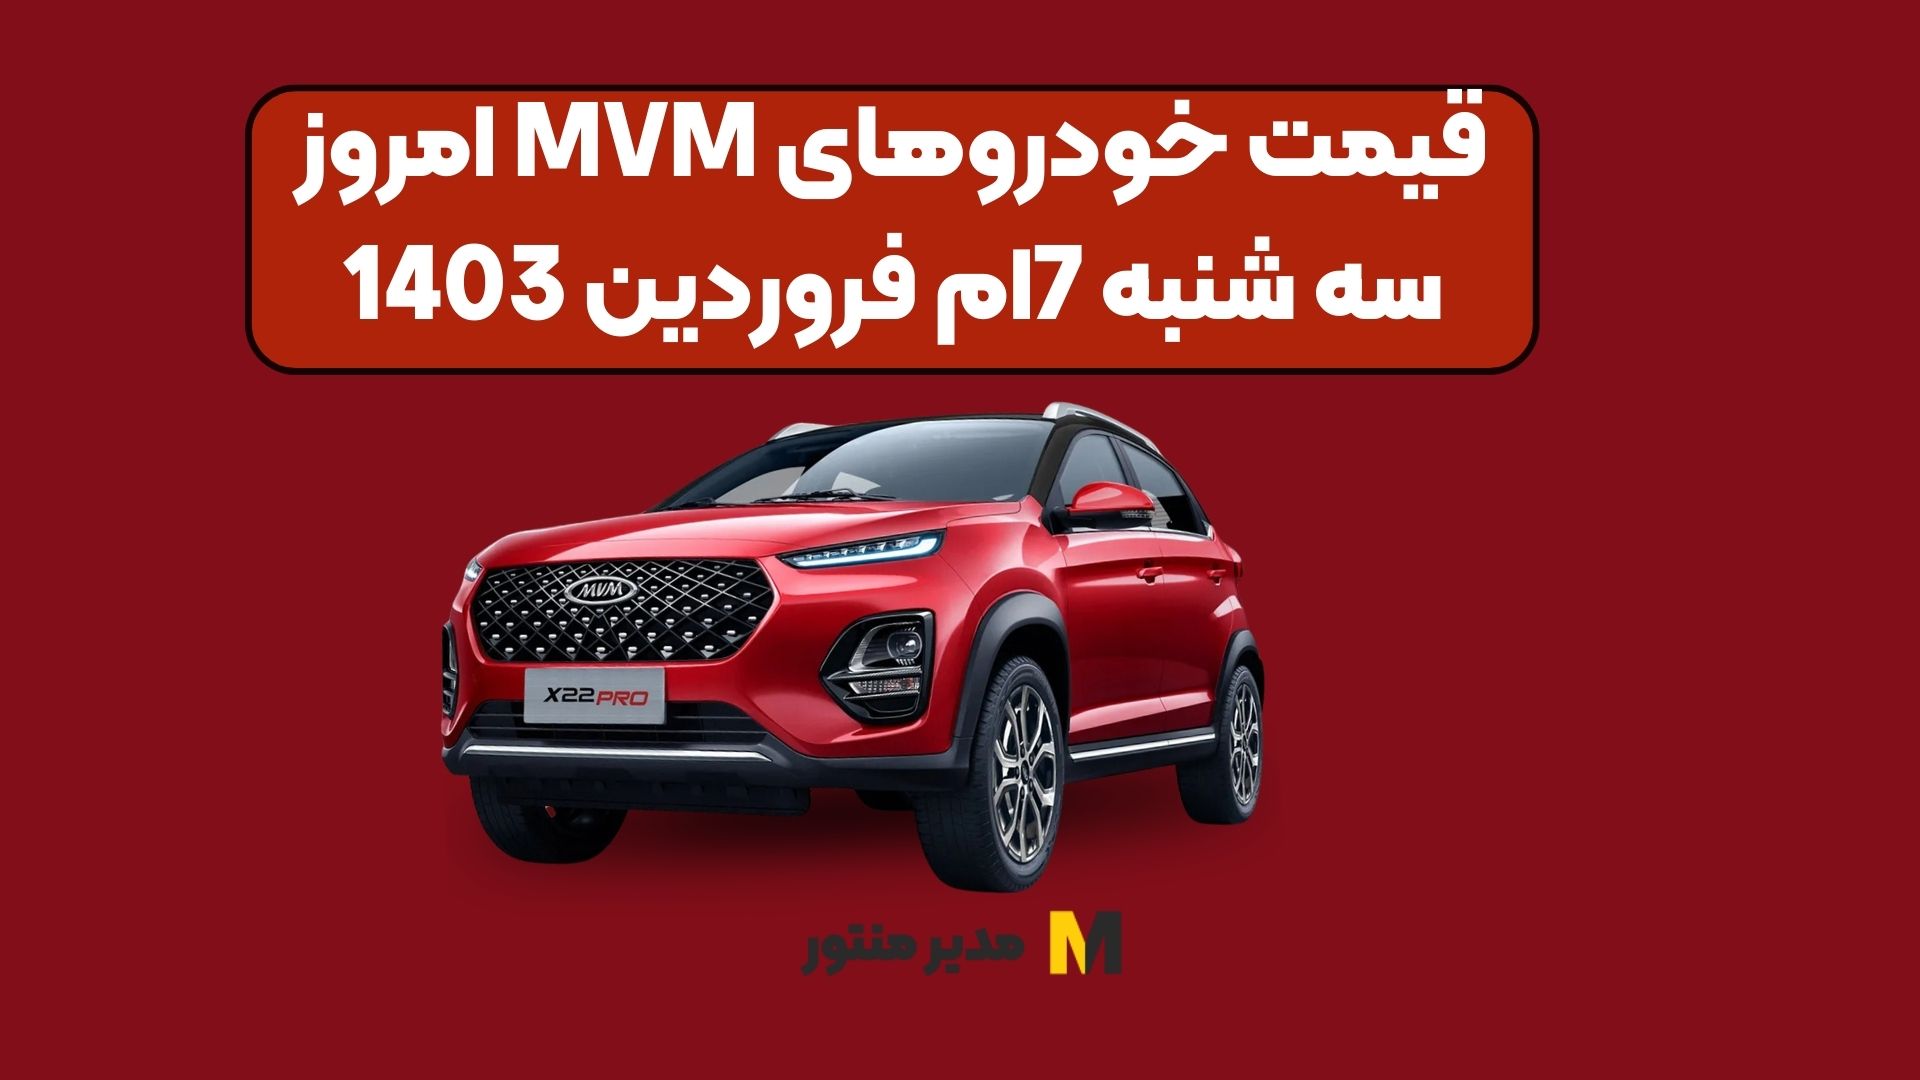 قیمت خودروهای MVM امروز سه شنبه 7ام فروردین 1403